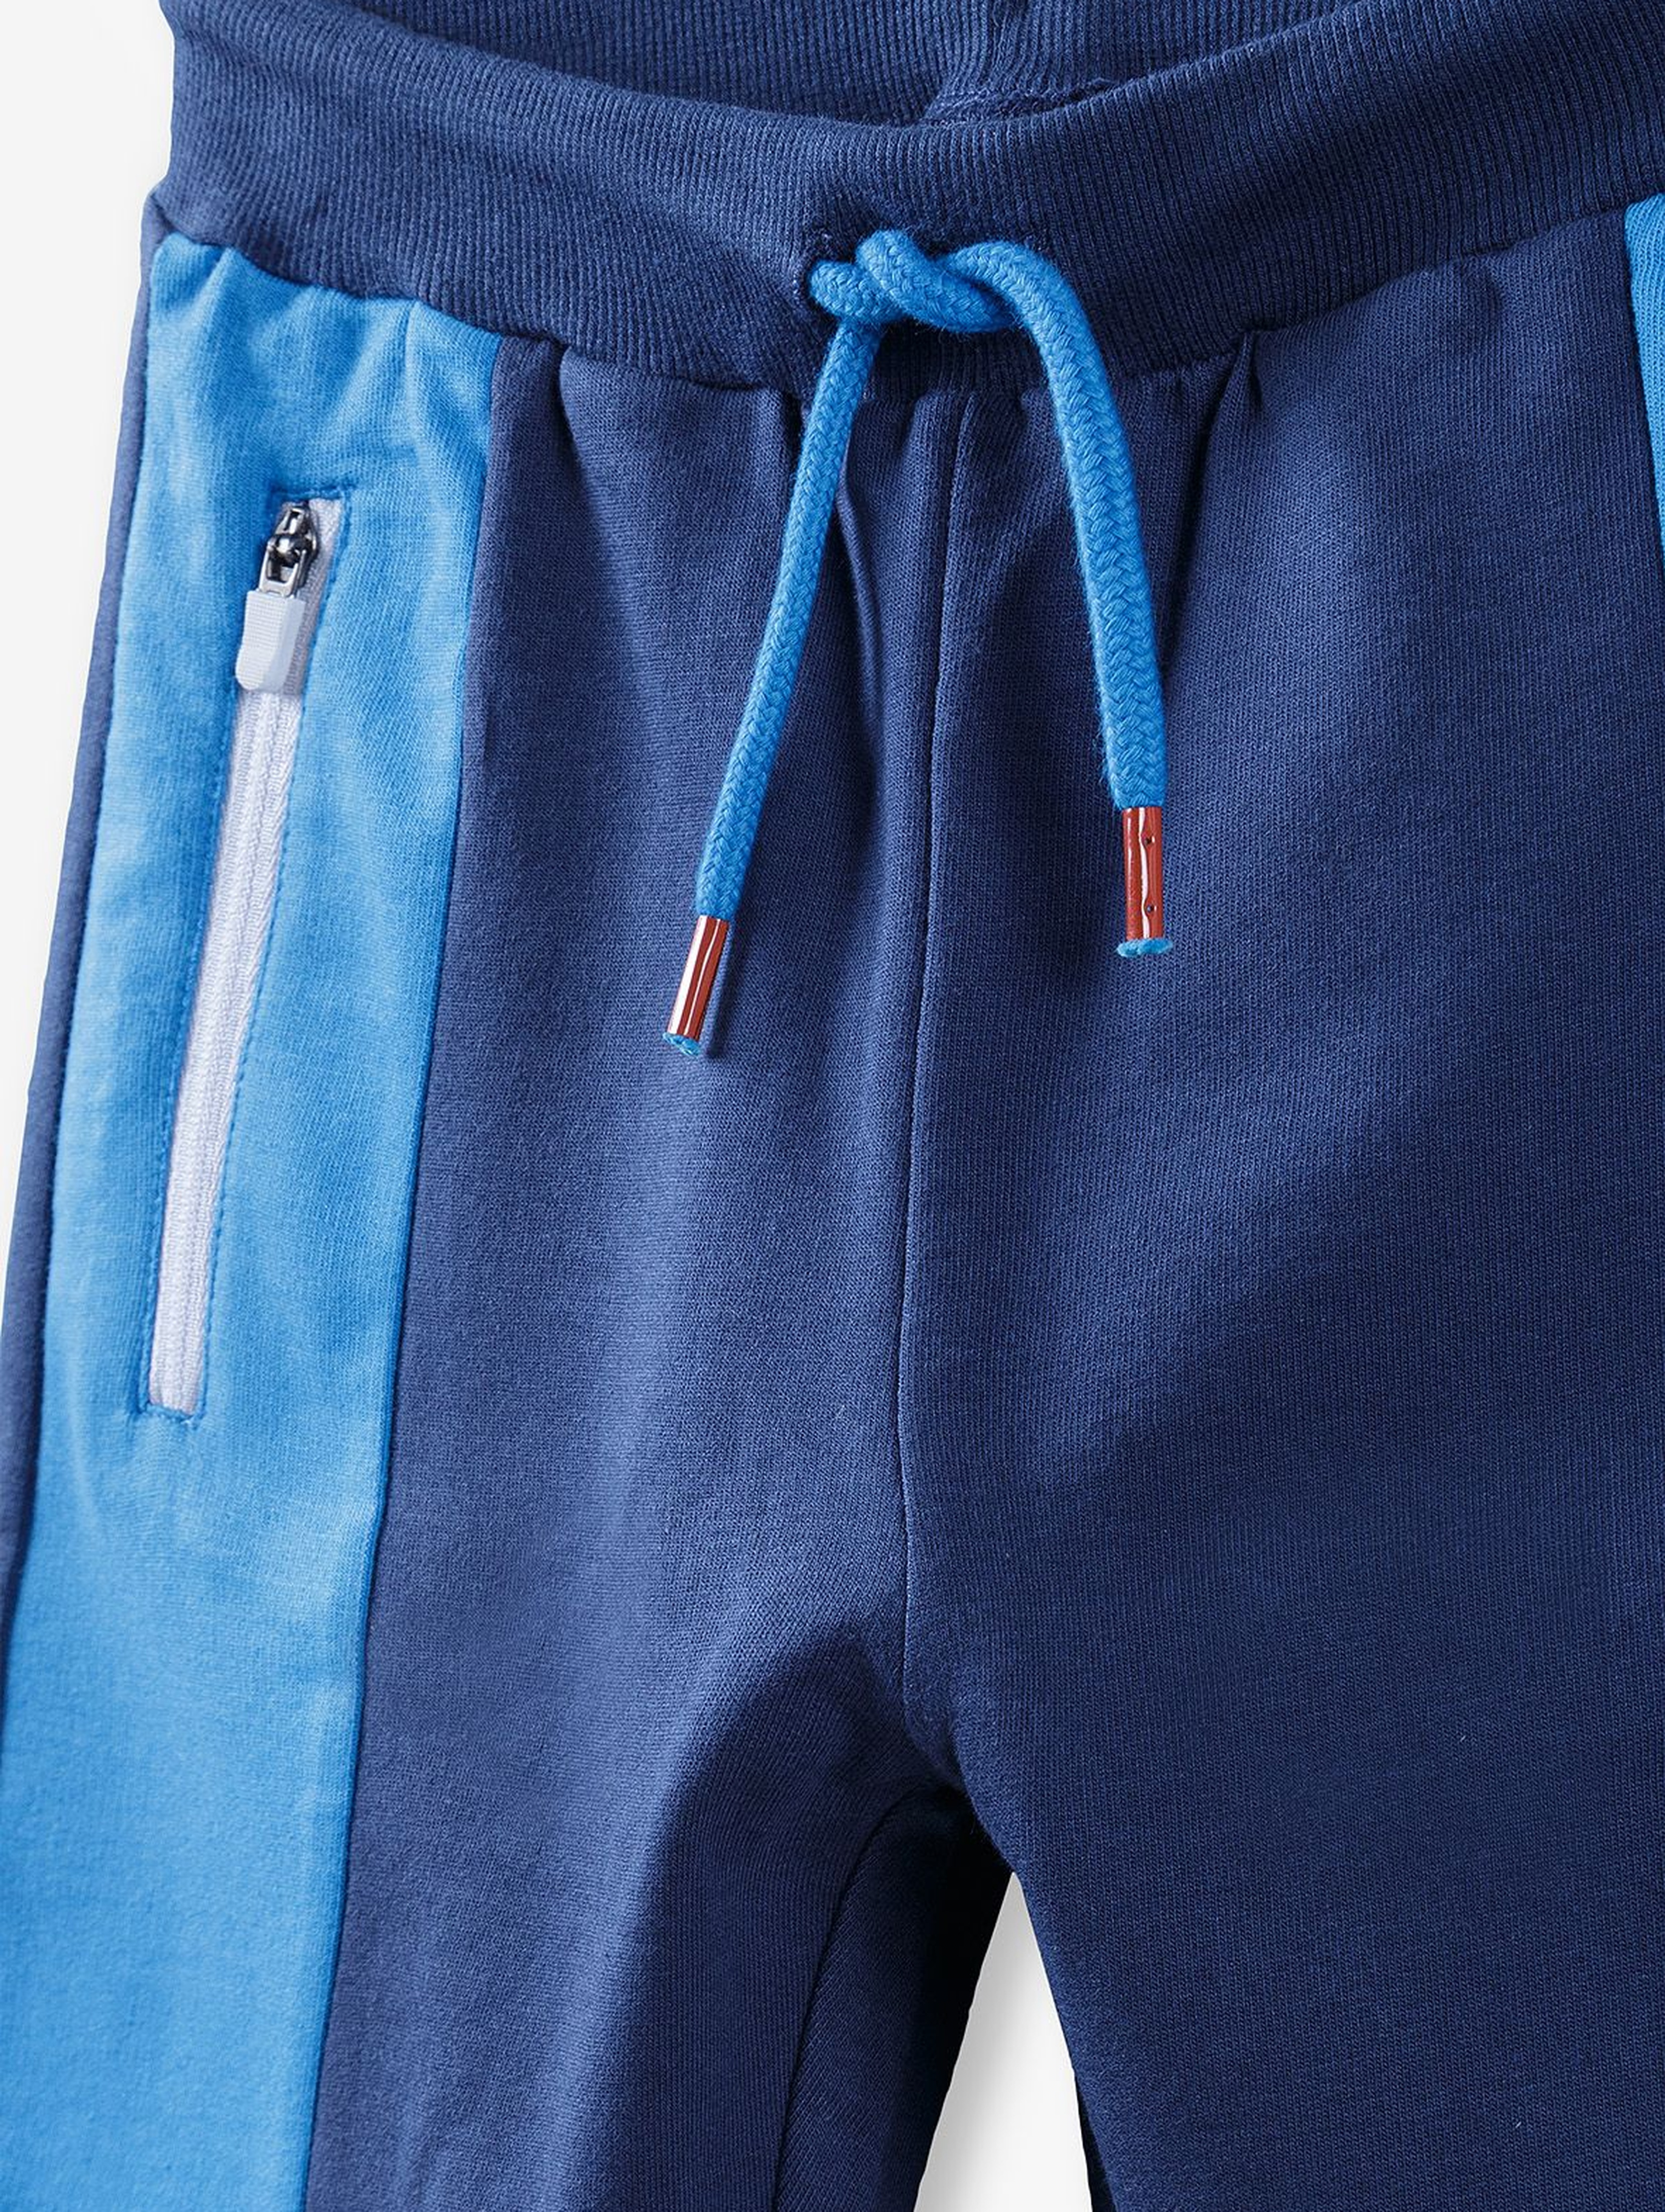 Spodnie dresowe chłopięce - granatowe z niebieskimi wstawkami